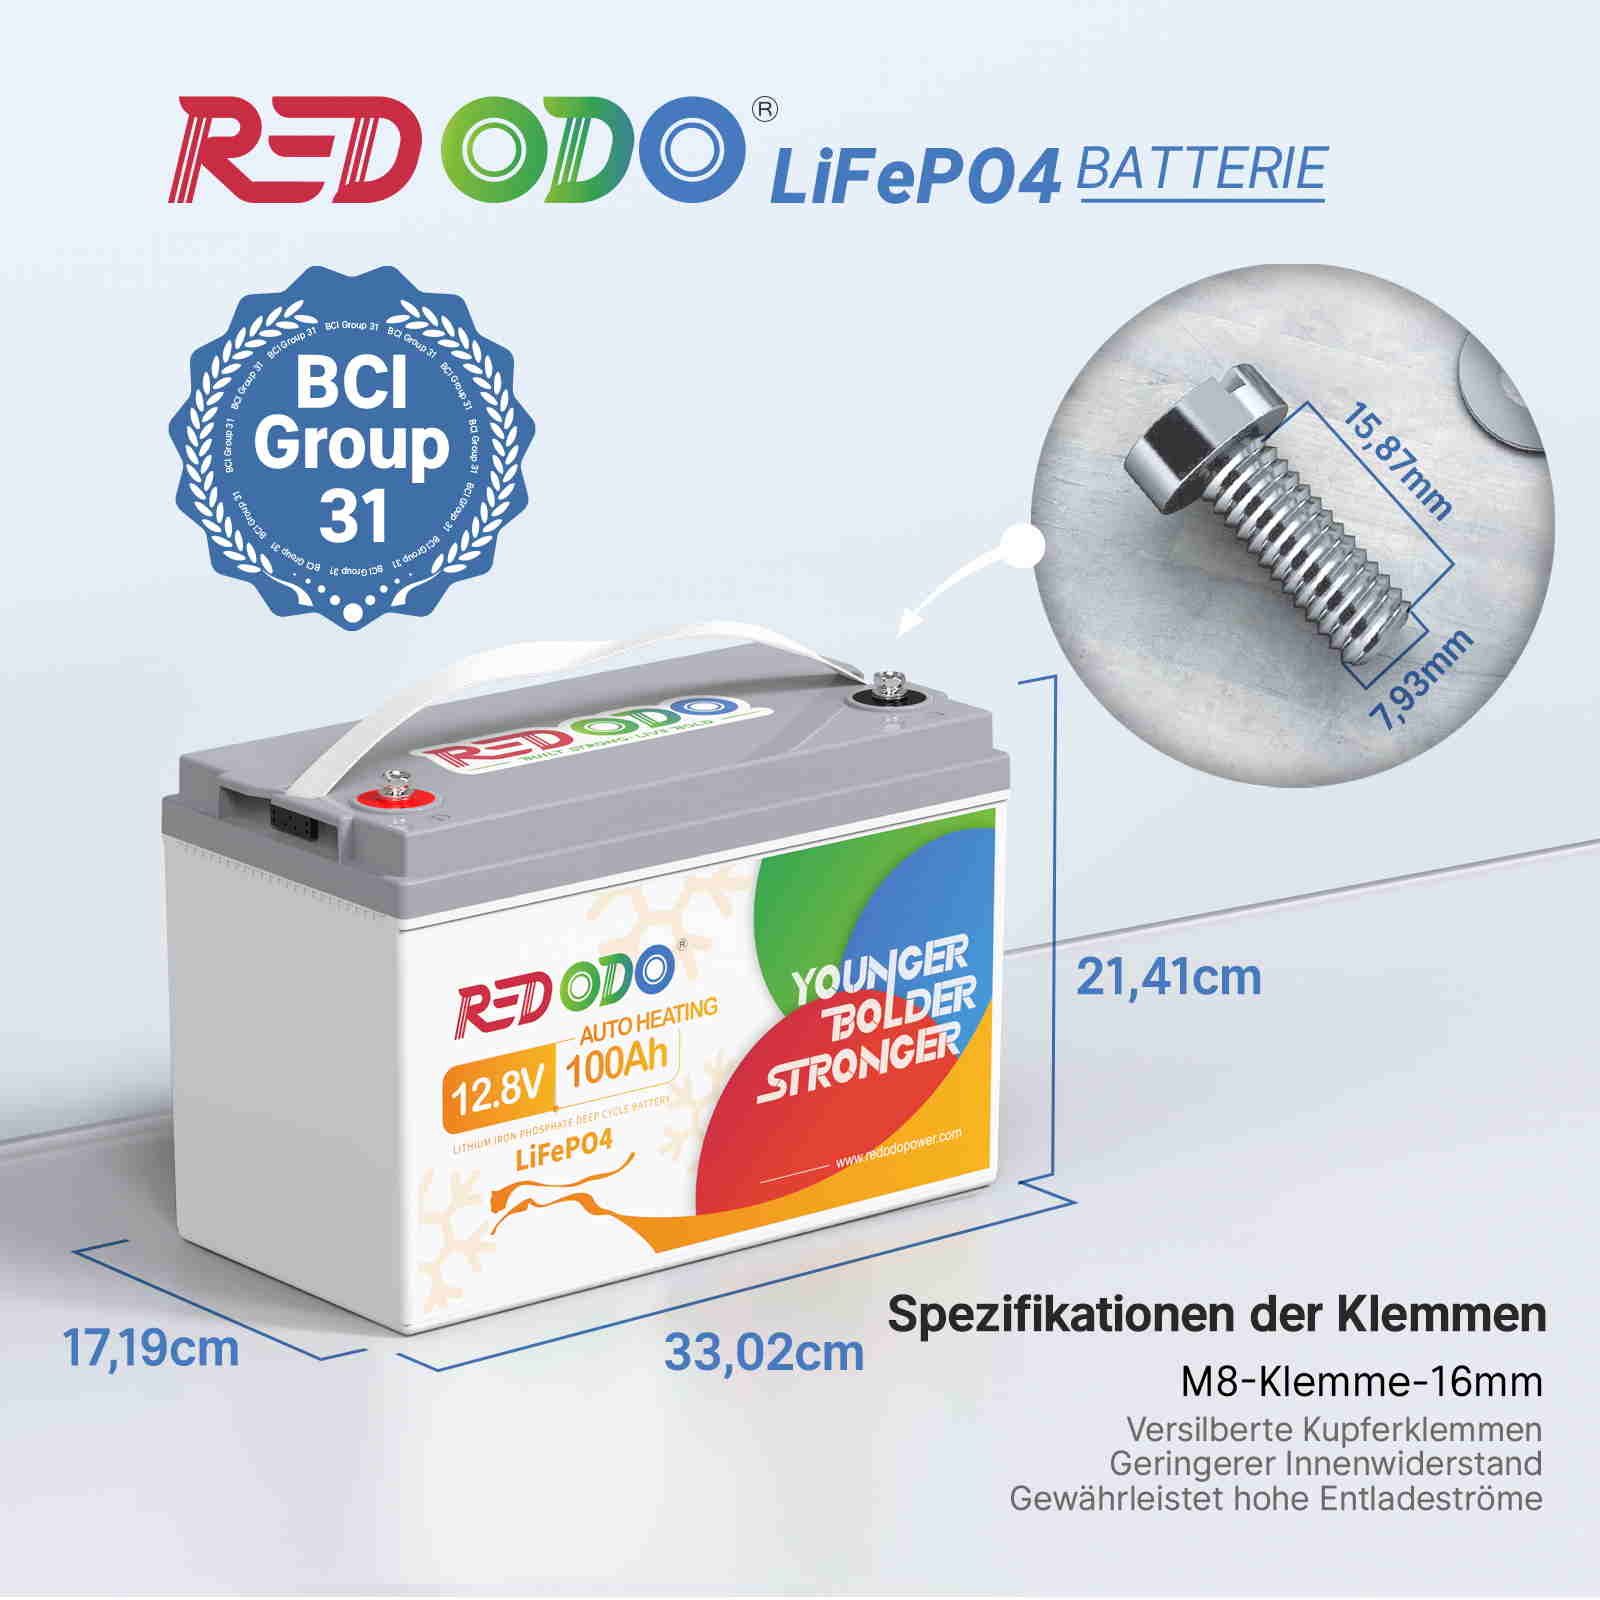 【Nur €268】Befreiung von 19% MwSt - Redodo 12V 100Ah LiFePO4 Batterie mit Selbsterwärmung - nur für Wohngebäude und Deutschland redodopower-de